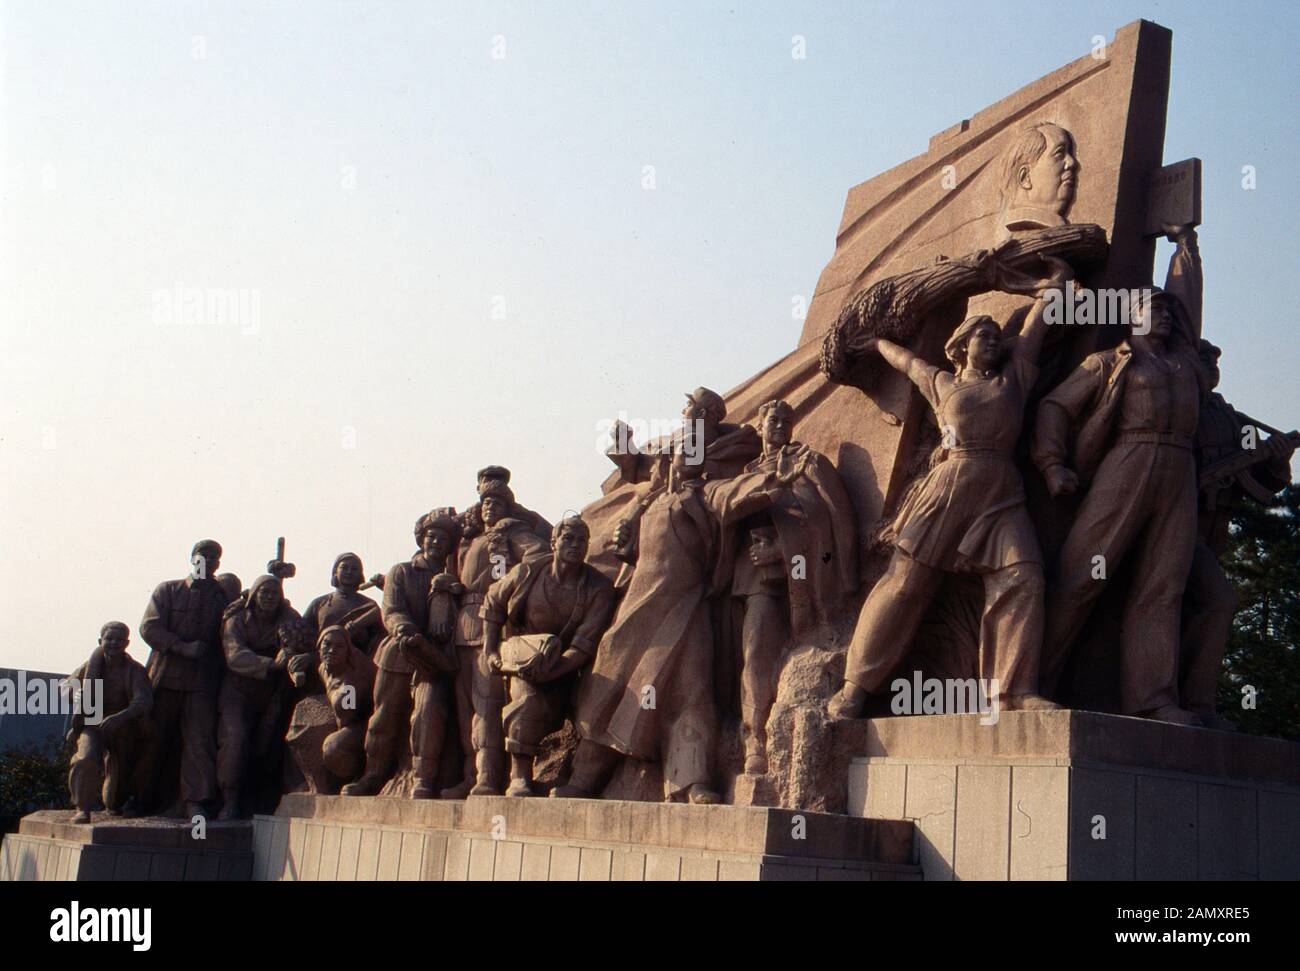 Arbeitnehmer Denkmal vor der Mao Zedong Memorial Hall auf dem Platz des Himmlischen Friedens a Pechino, Cina um 1990. Monumento dei lavoratori su Piazza Tiananmen a Pechino, Cina intorno al 1990. Foto Stock